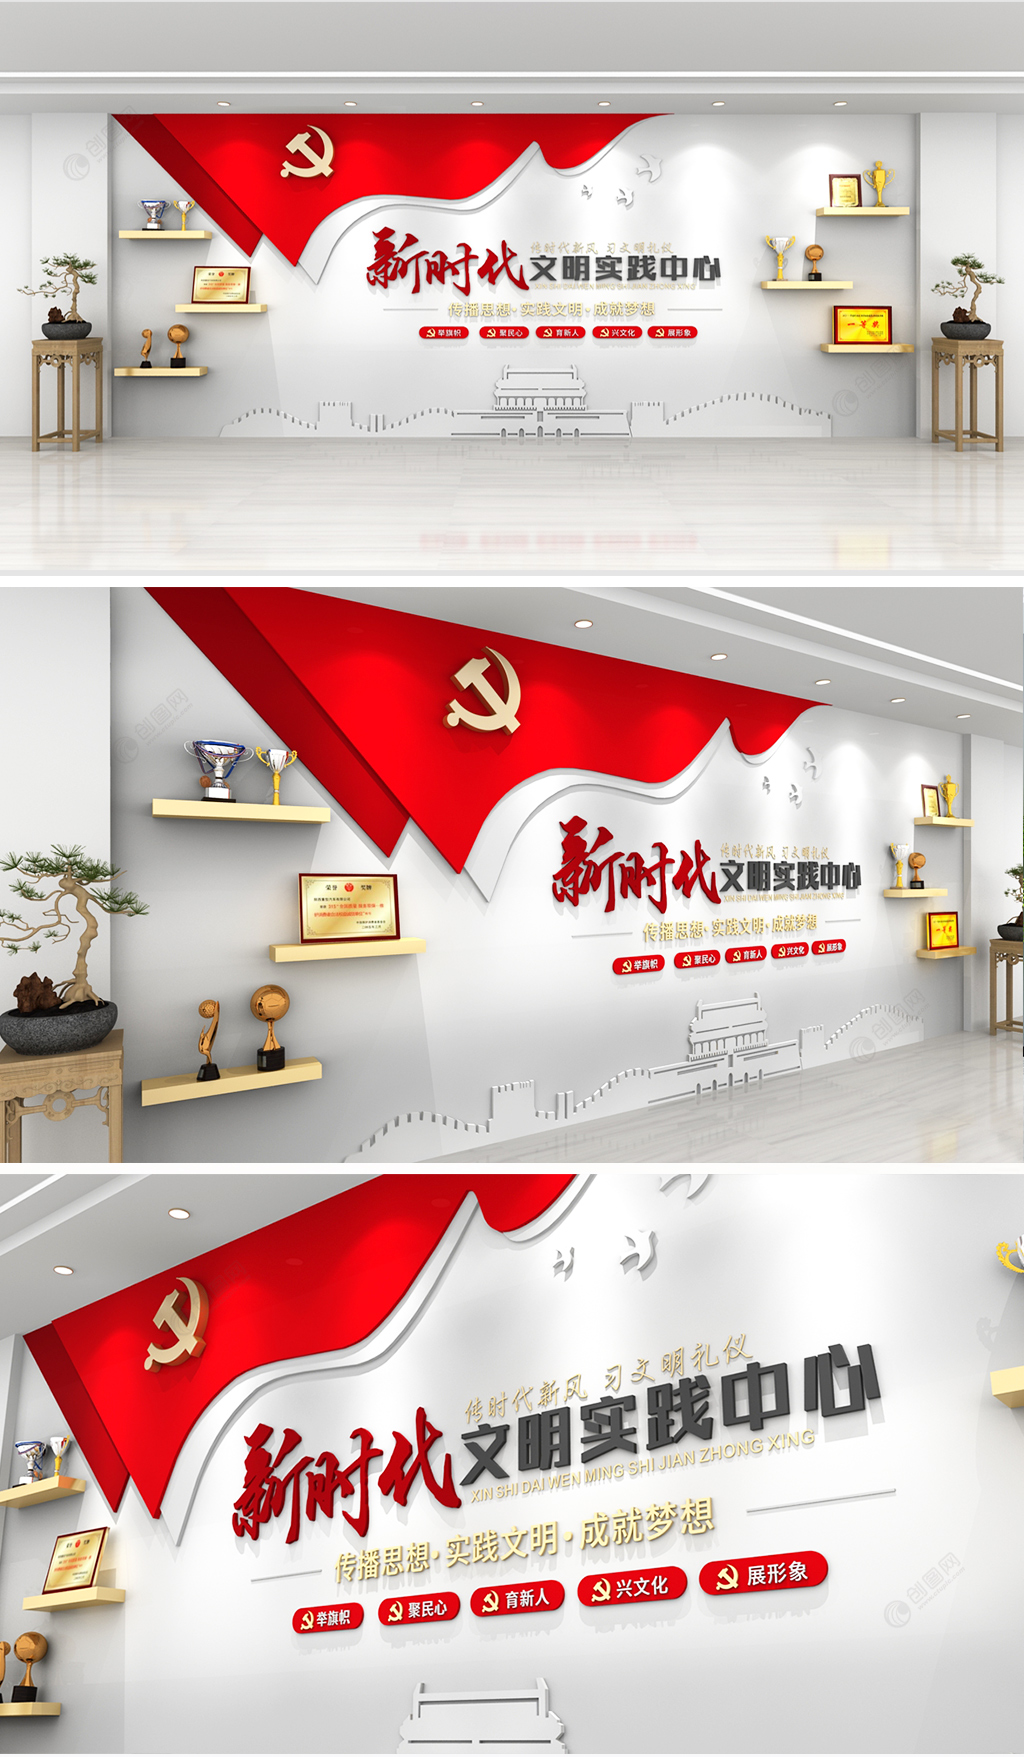 简约红色文化新时代文明实践中心党建文化墙设计